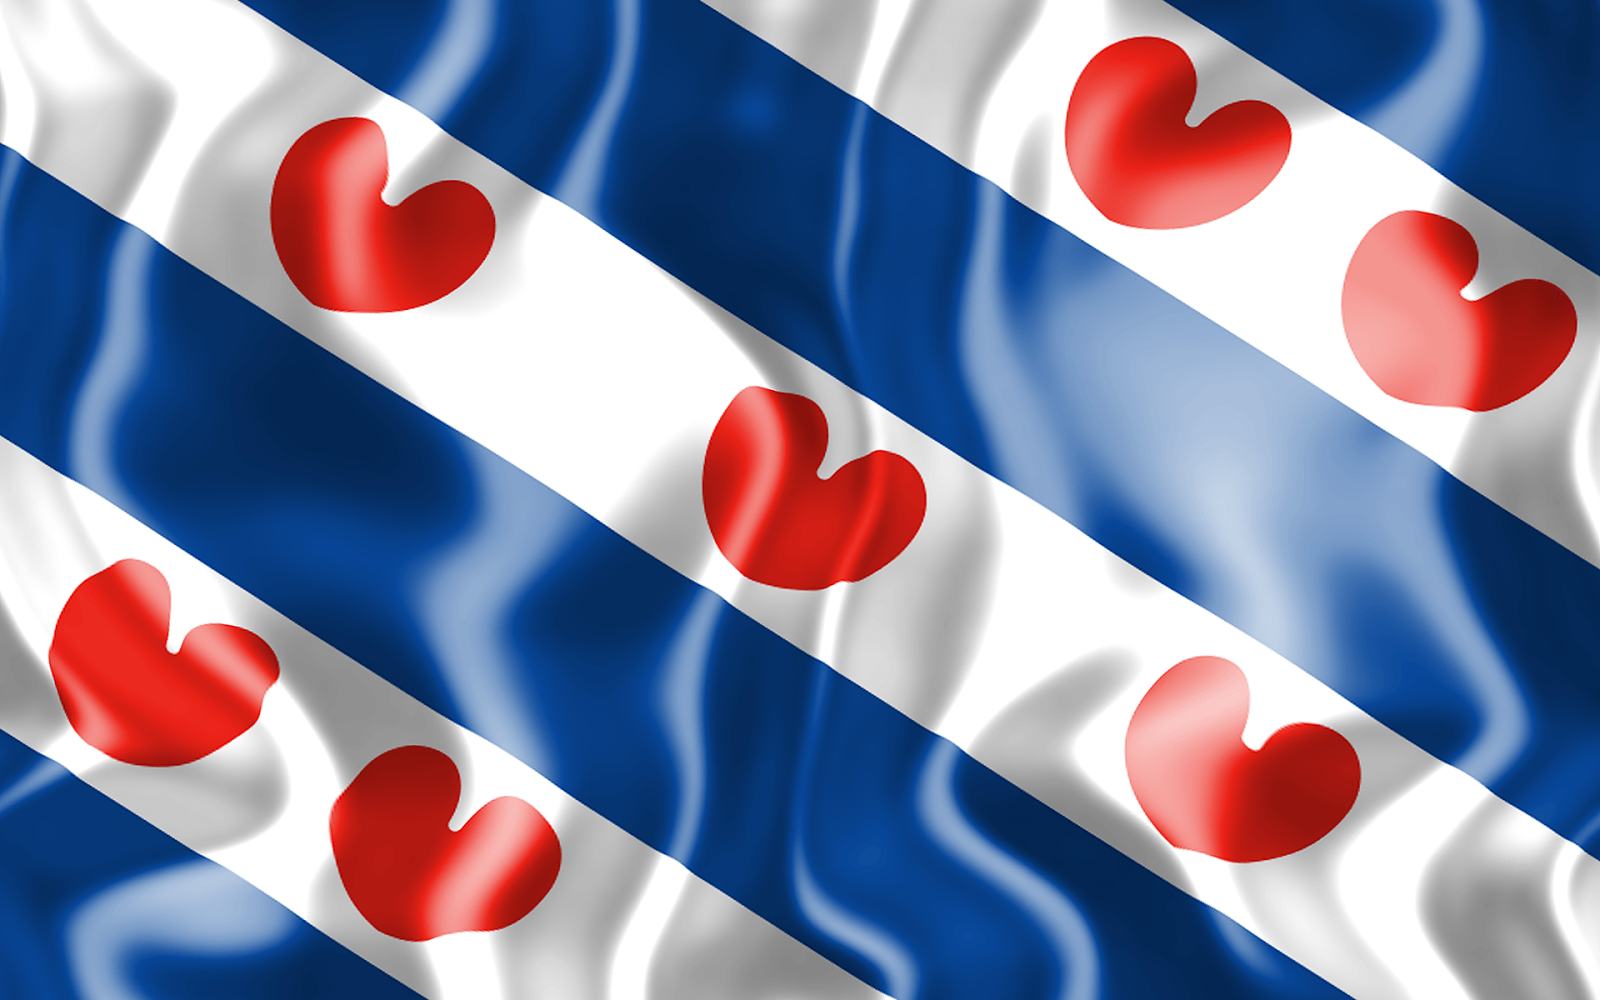 friese vlag